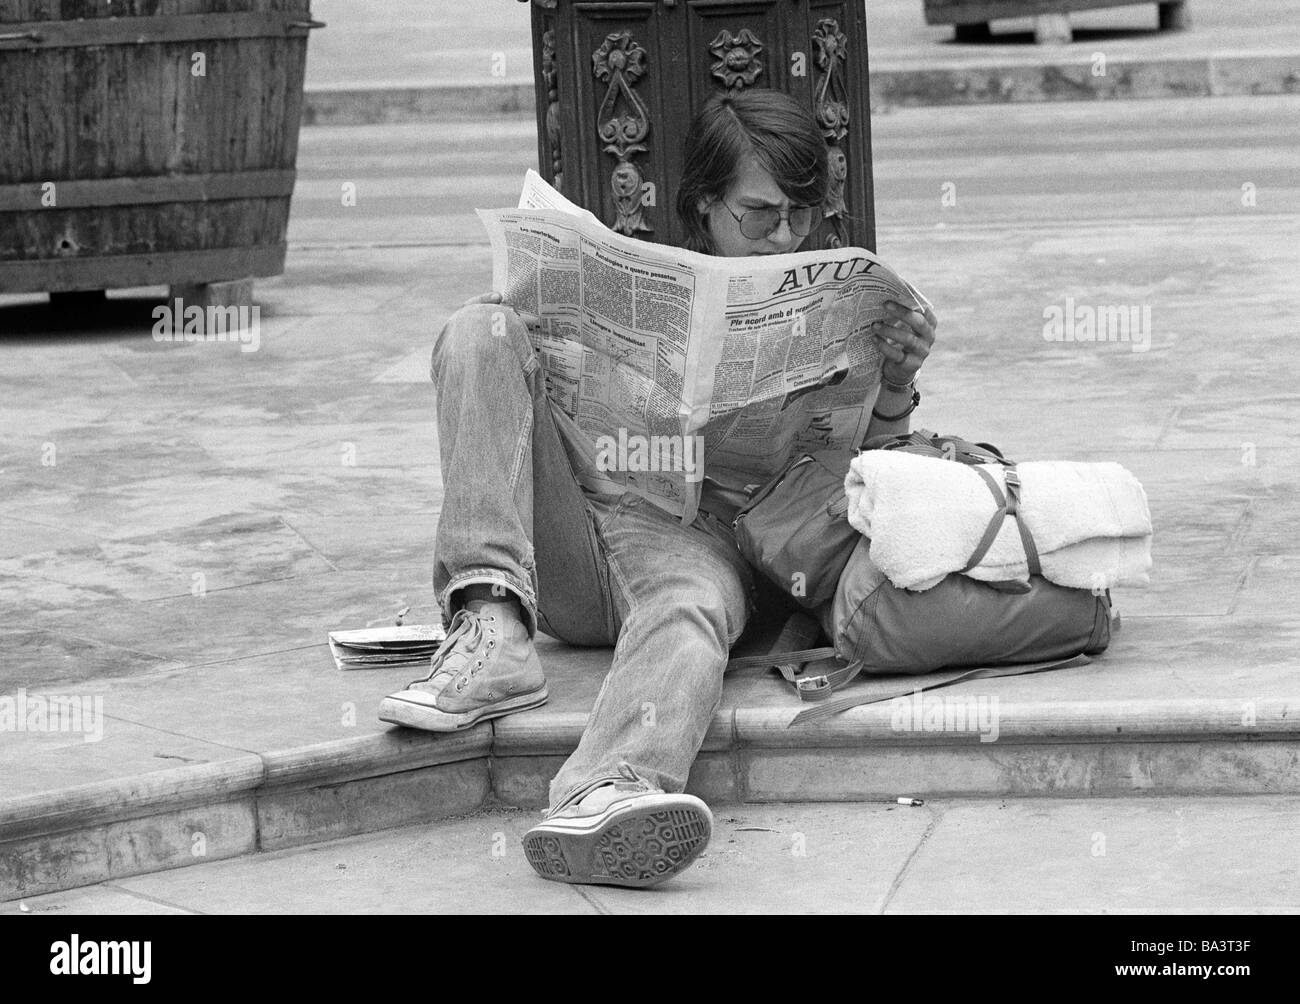 Negli anni settanta, foto in bianco e nero, persone, adolescente si siede sul ciglio della strada leggendo un giornale, bagagli, borsa jeans pantaloni, plimsolls, di età compresa tra i 18 e i 22 anni, Spagna, Valencia Foto Stock